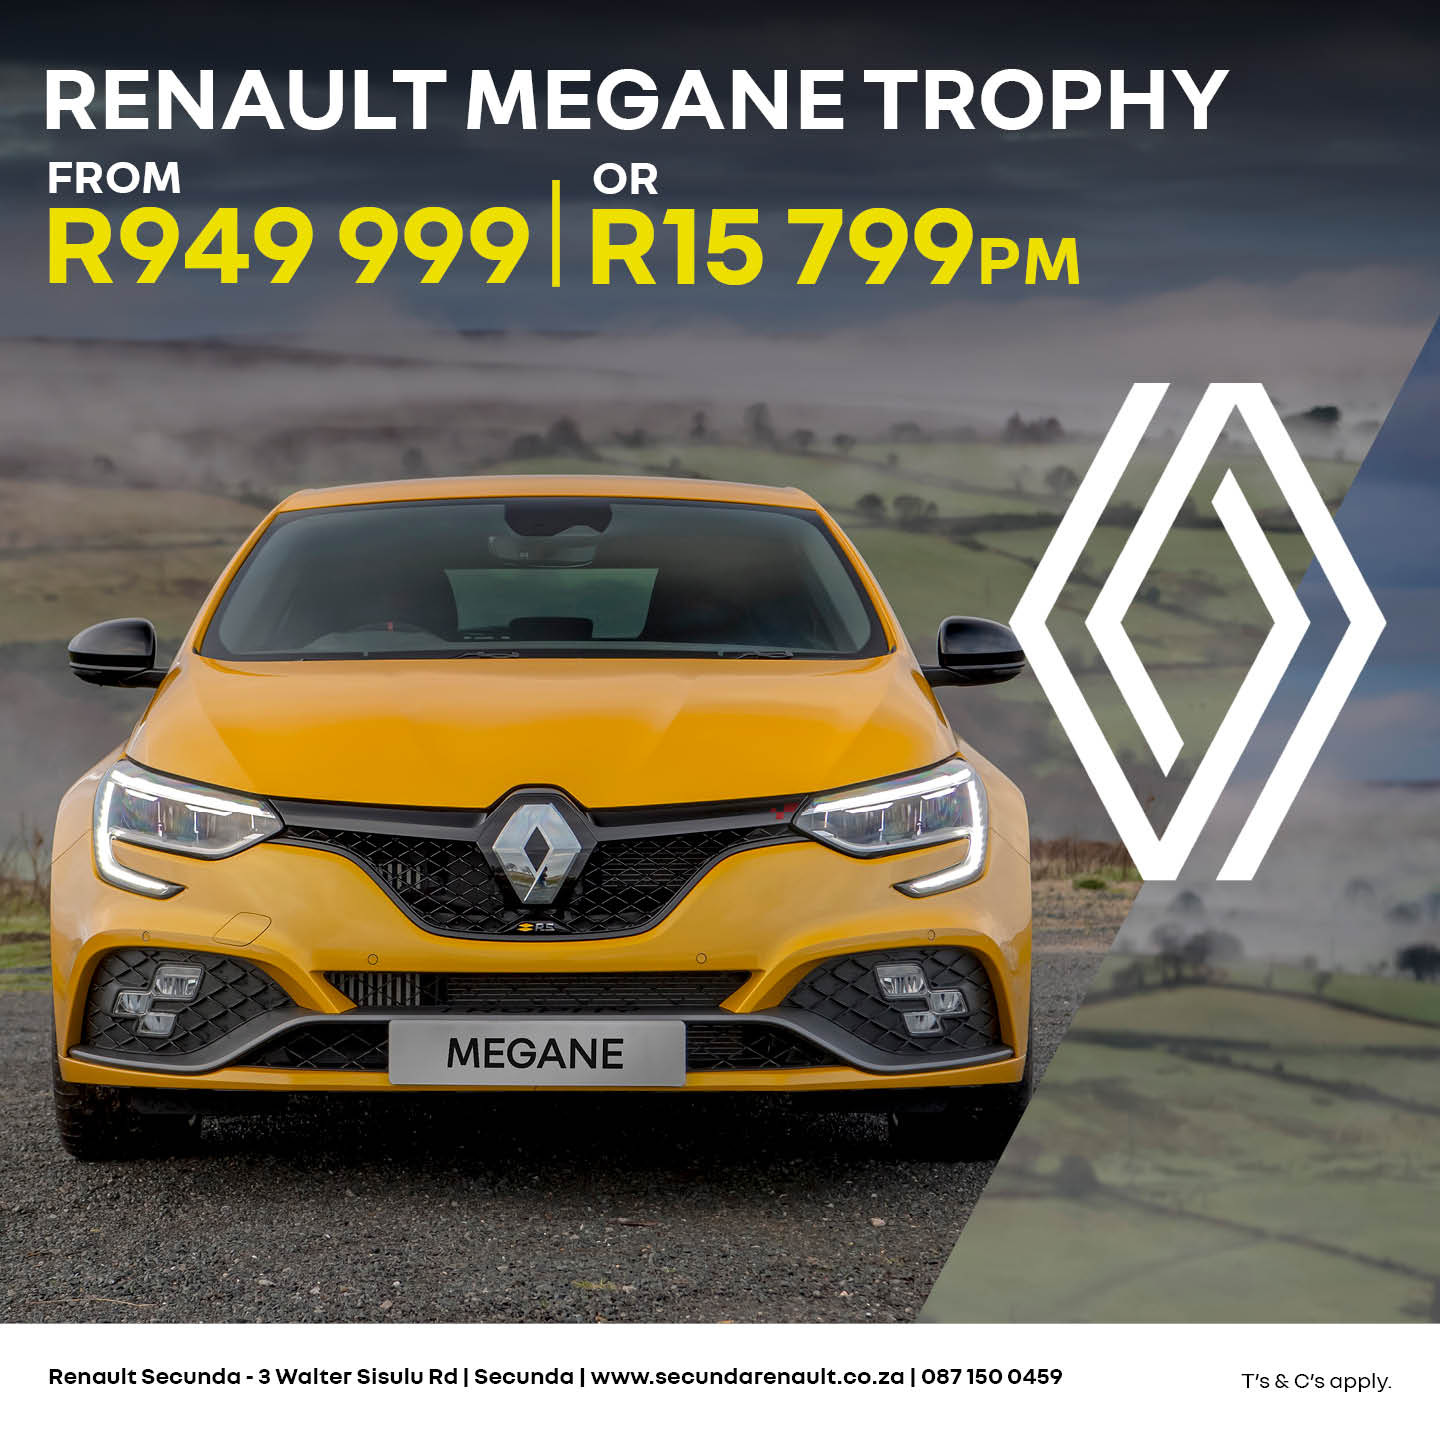 Renault Megane Trophy image from Eastvaal Motors